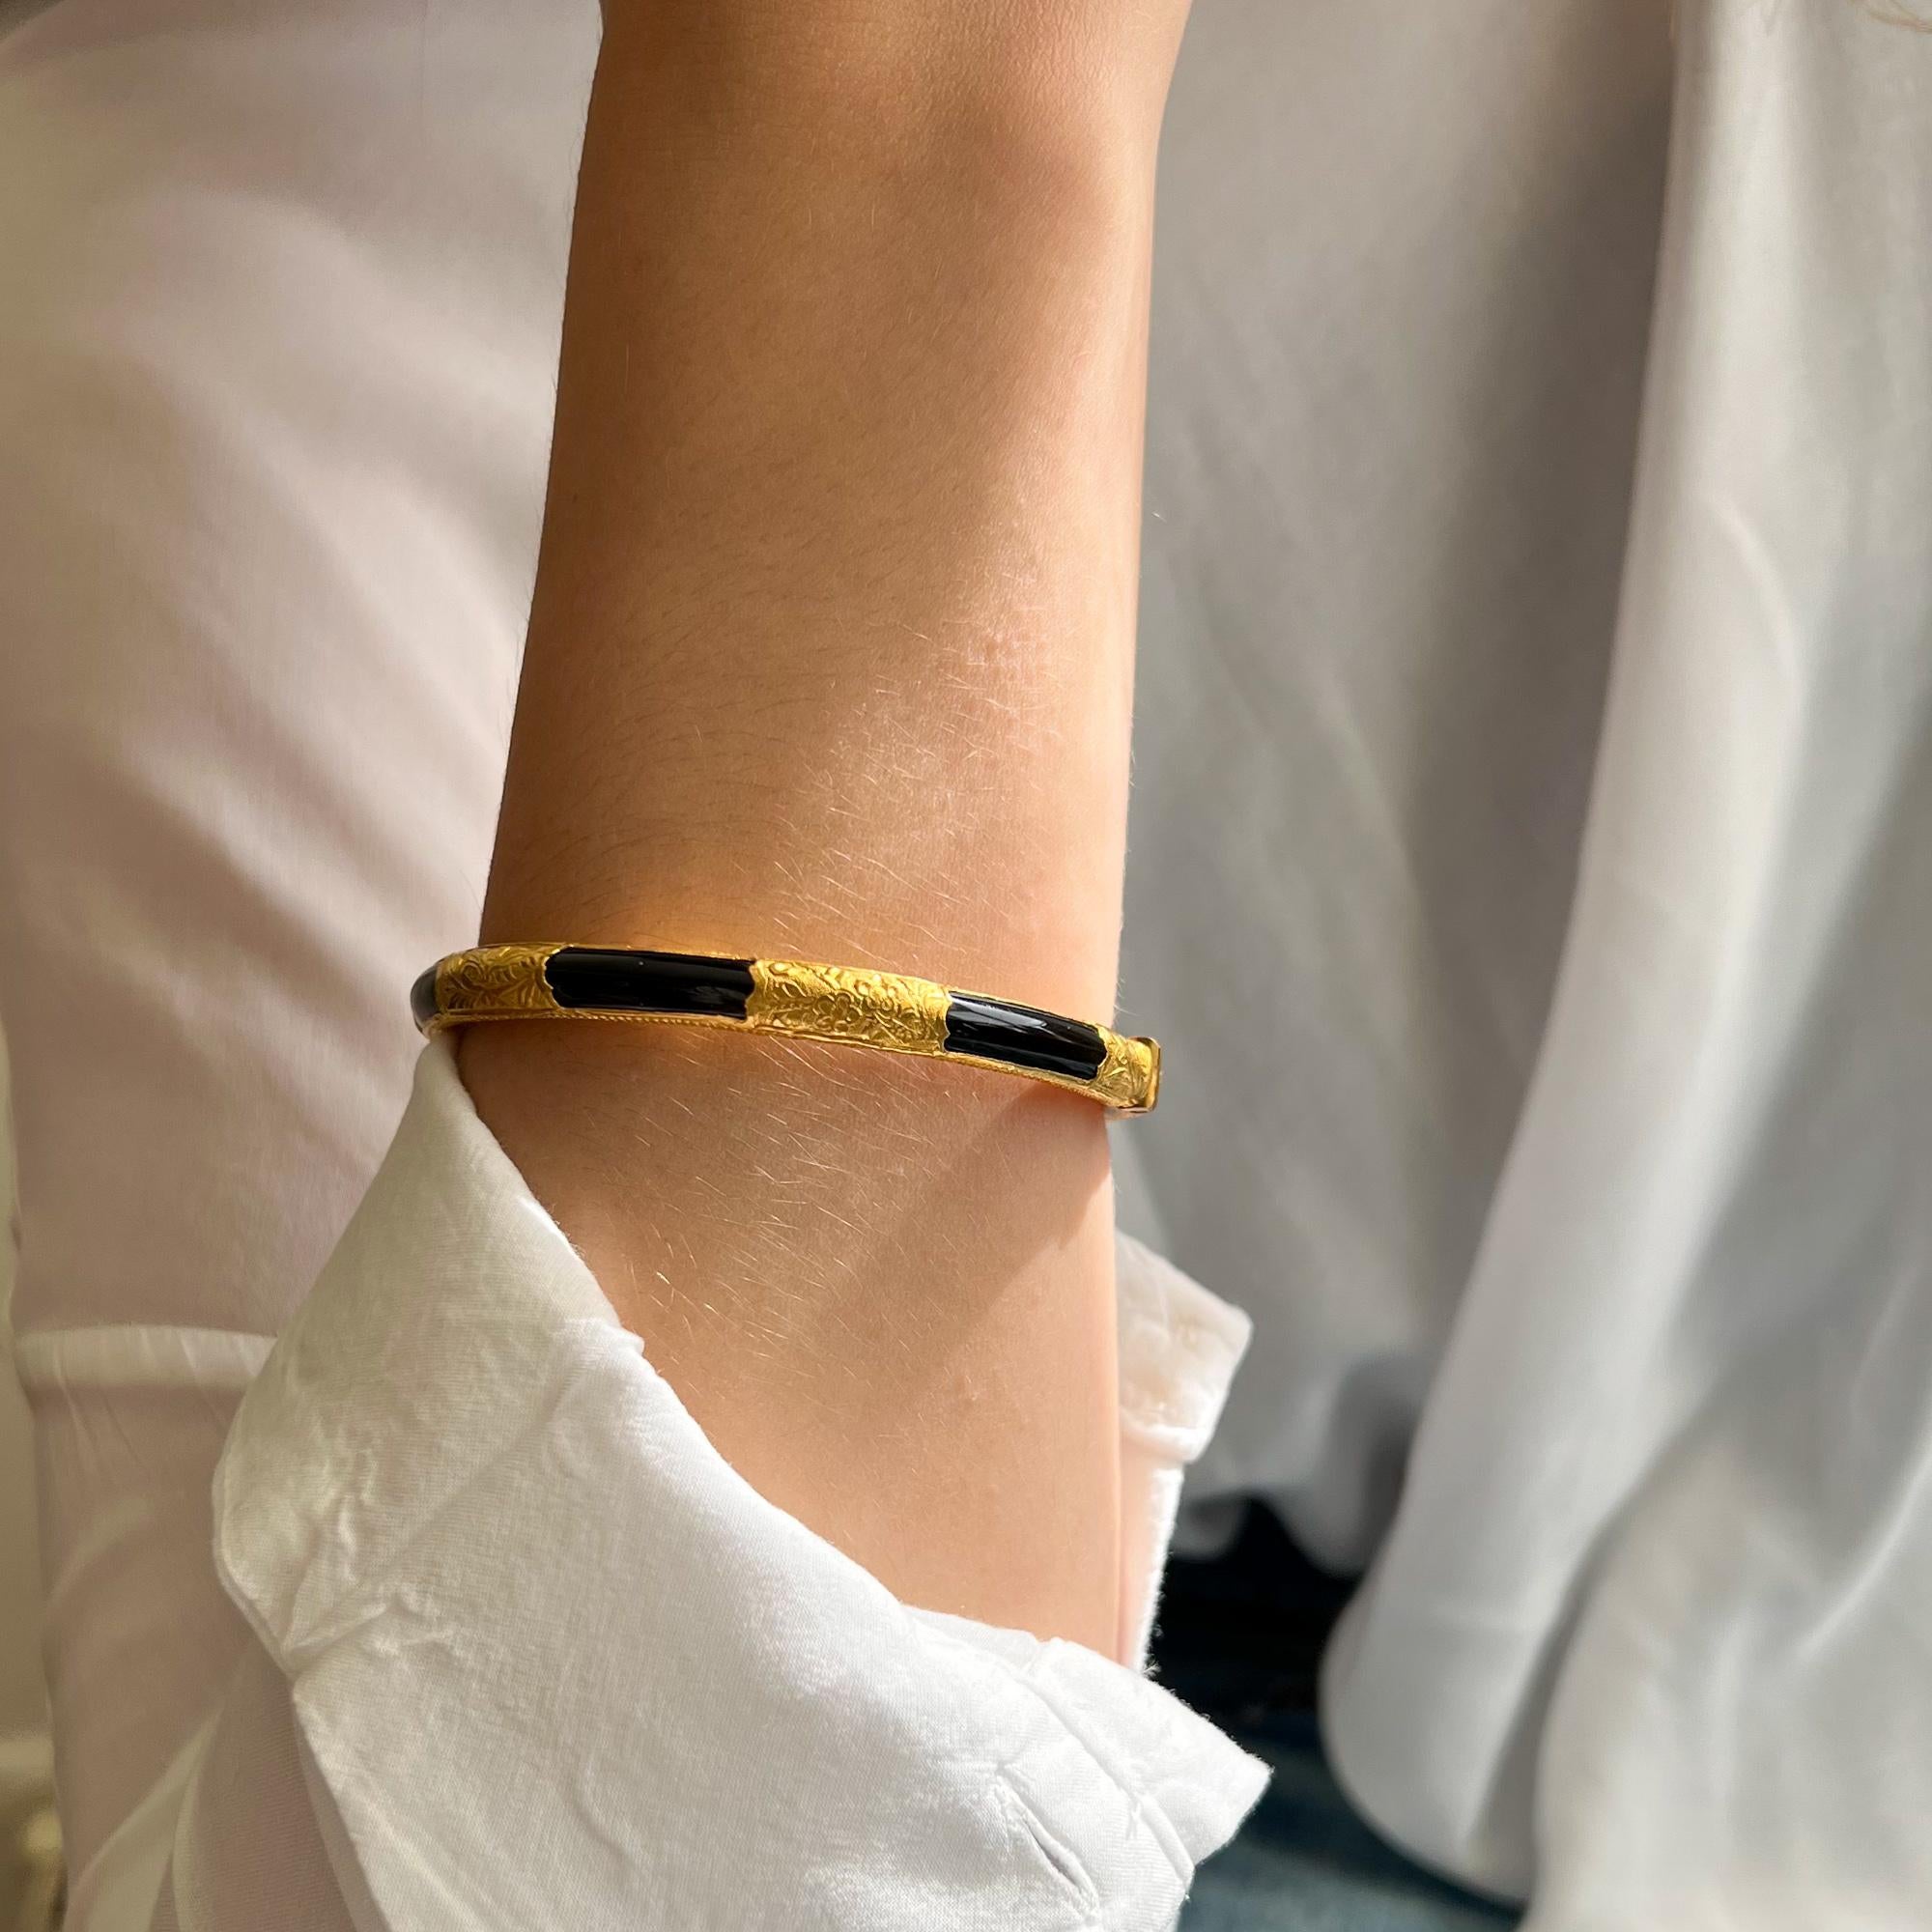 Un bracelet bangle avec une belle combinaison d'onyx et d'or jaune chaud. Ce bracelet bangle en or 20 carats comporte six compartiments gravés de motifs floraux et de feuilles. Entre les six sections en or, l'onyx noir accentue les compartiments